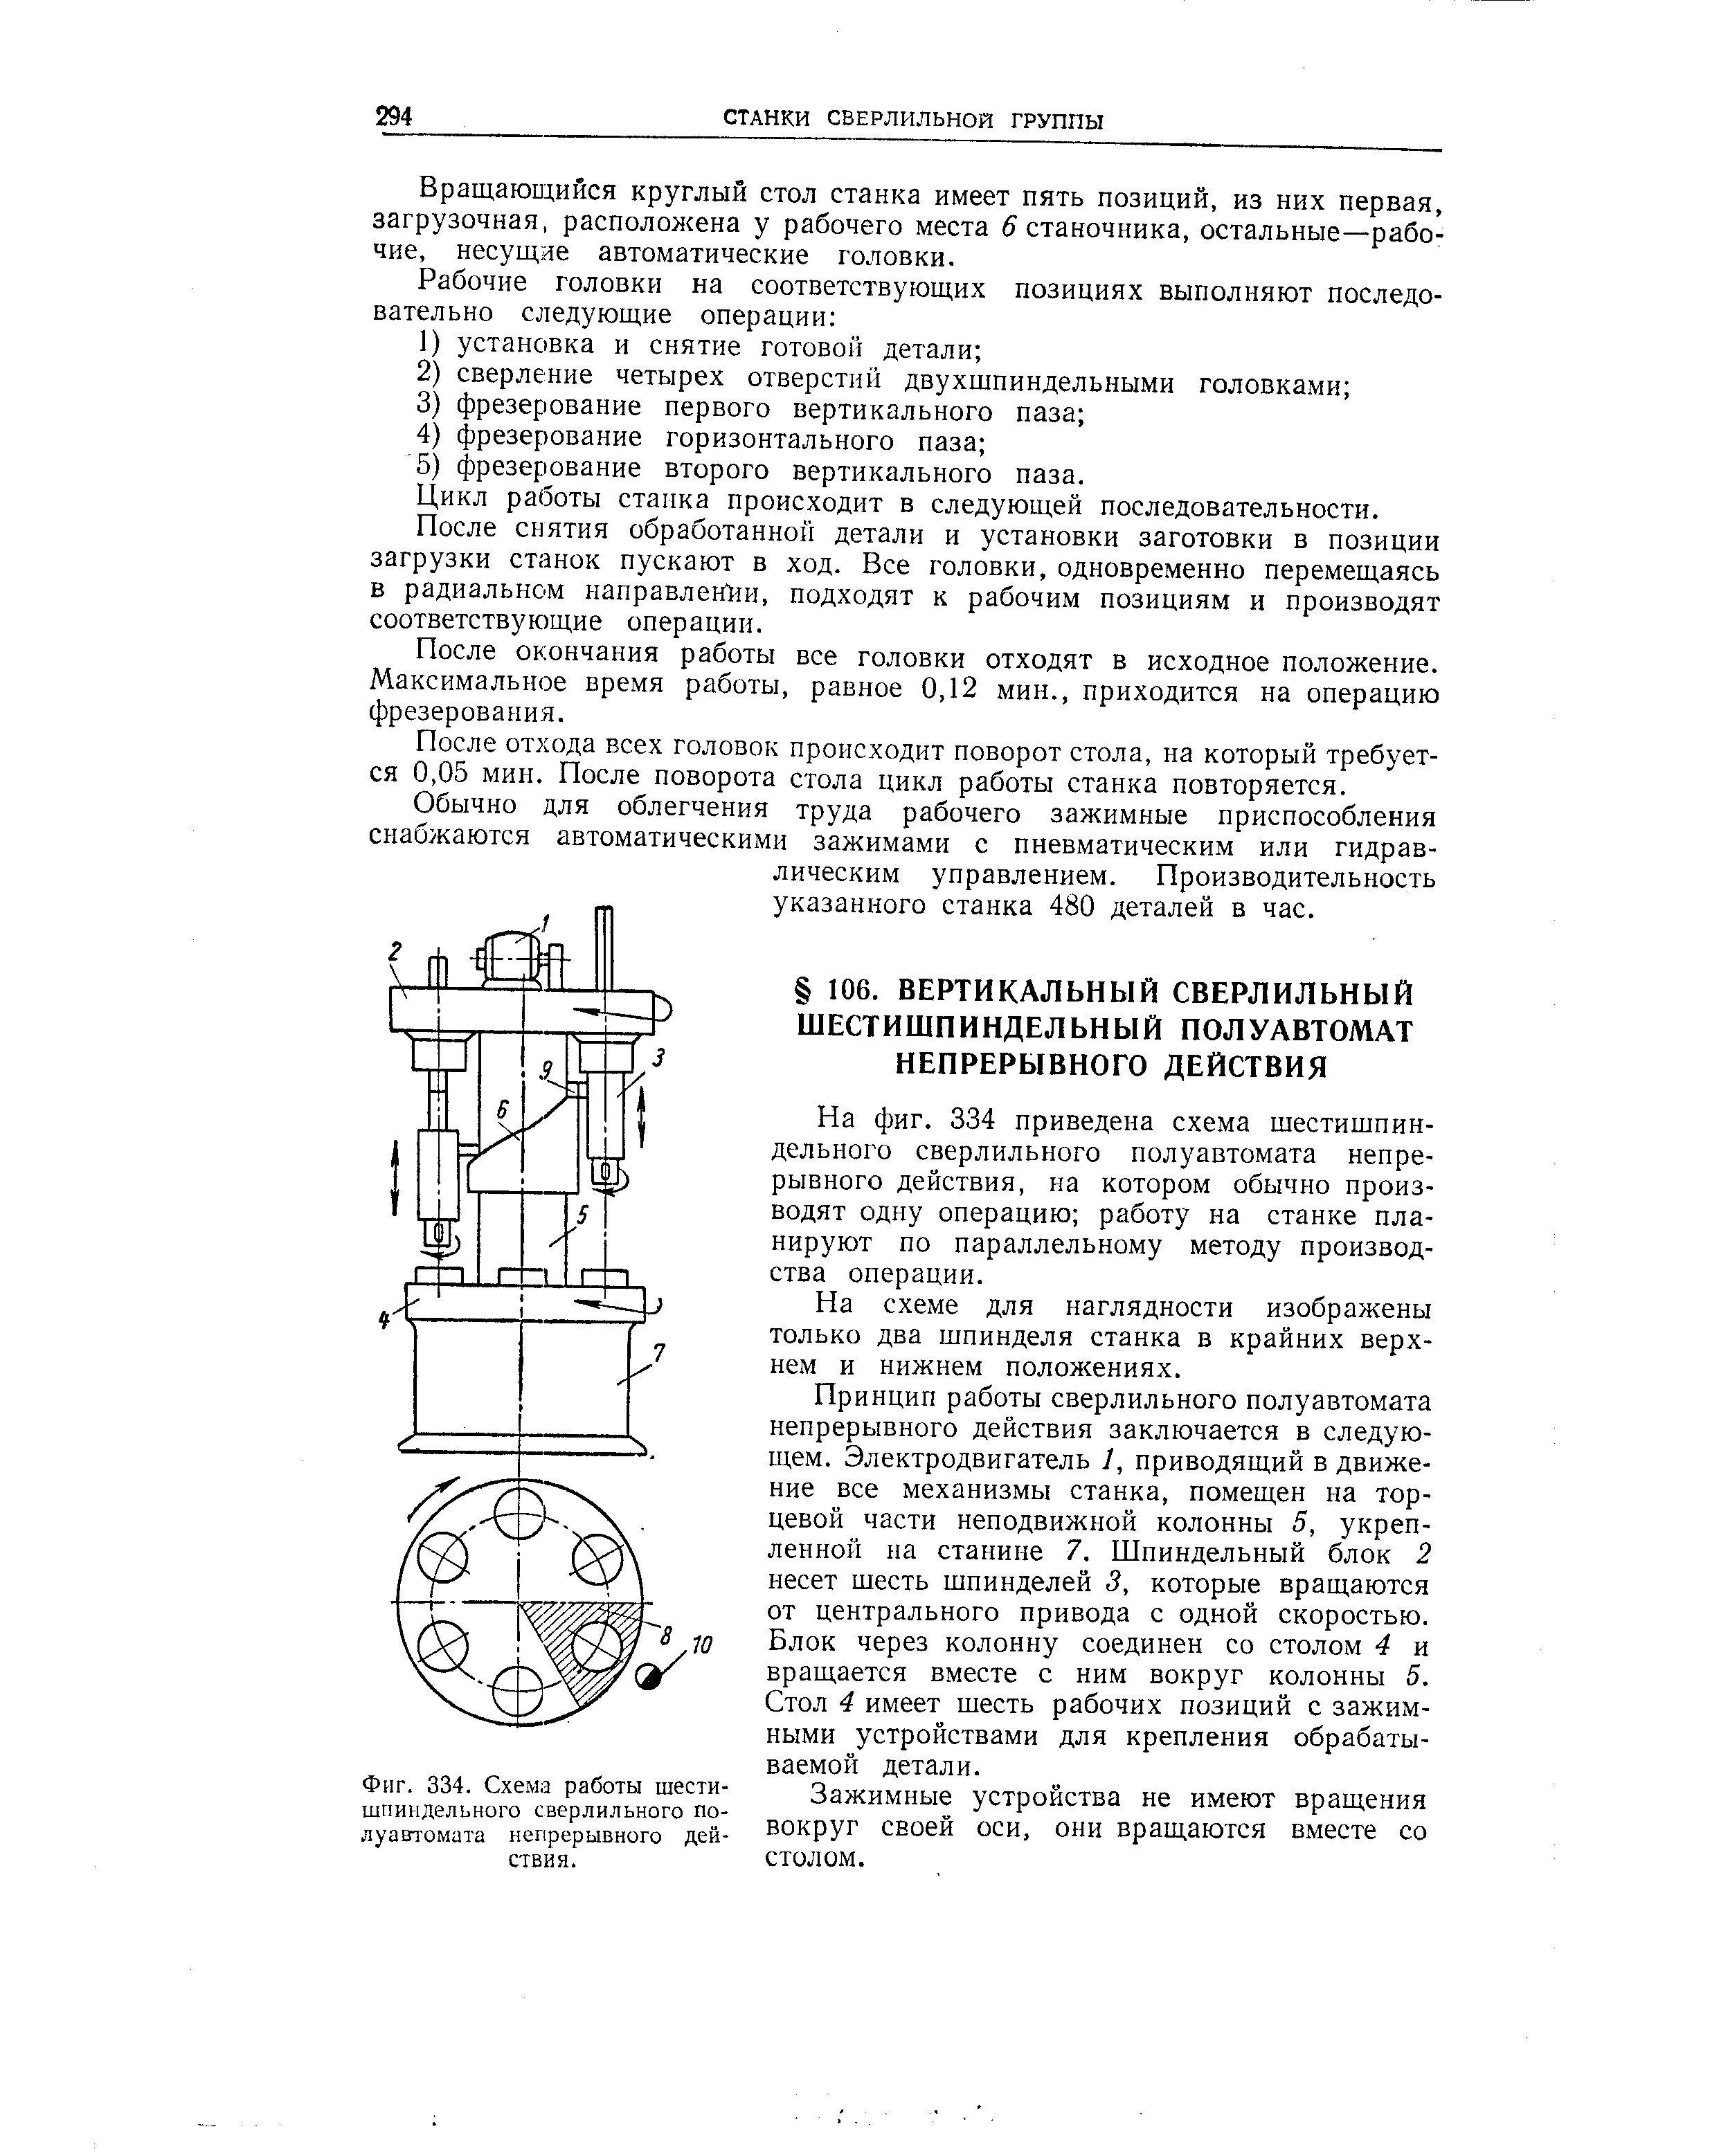 Фиг. 334. Схема работы шести-шпиидельного сверлильного полуавтомата непрерывного действия.
